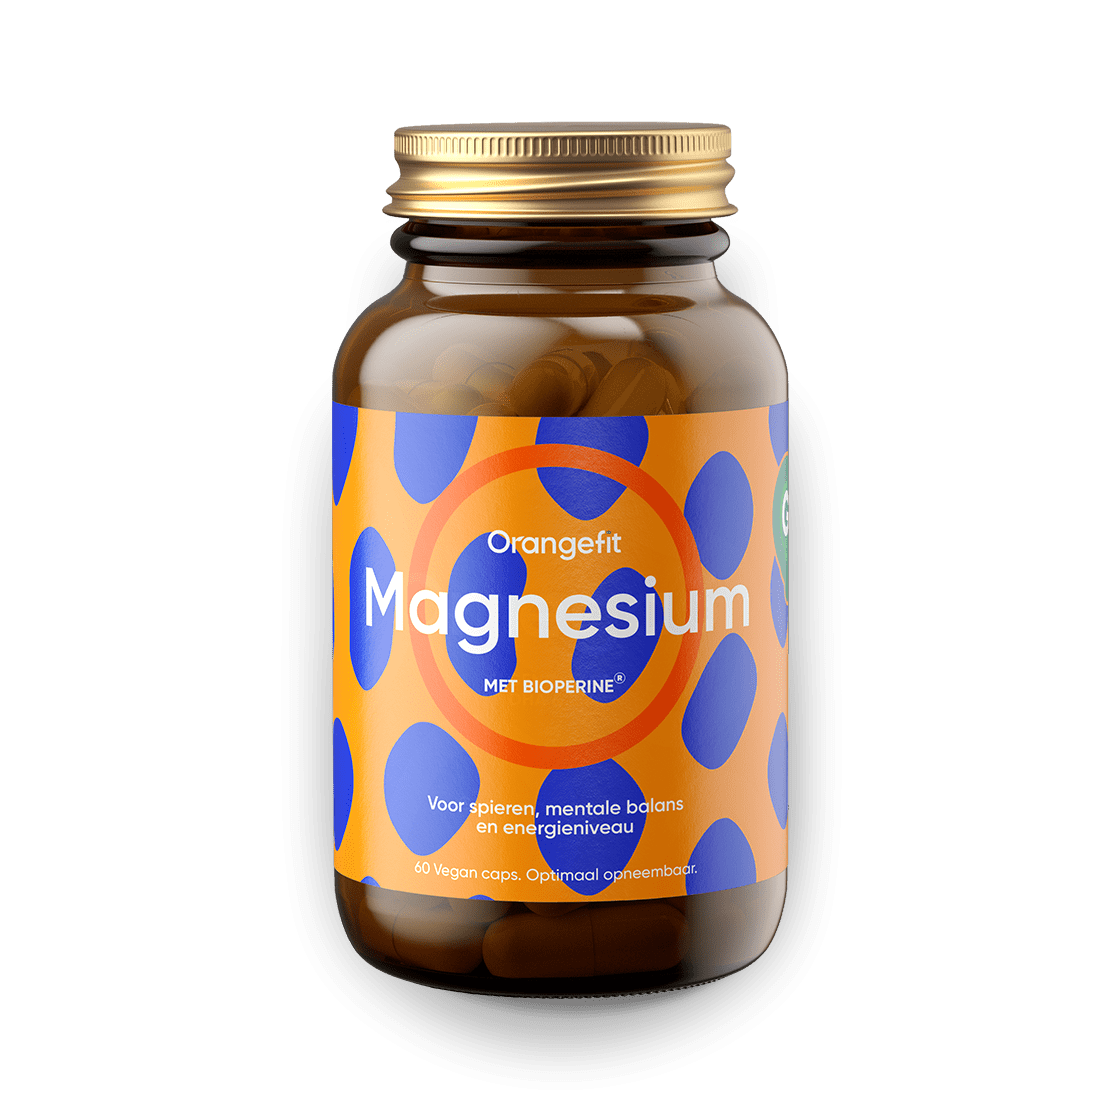 musicus Aankoop prioriteit Magnesium van Orangefit® - Let's Create A Fitter World